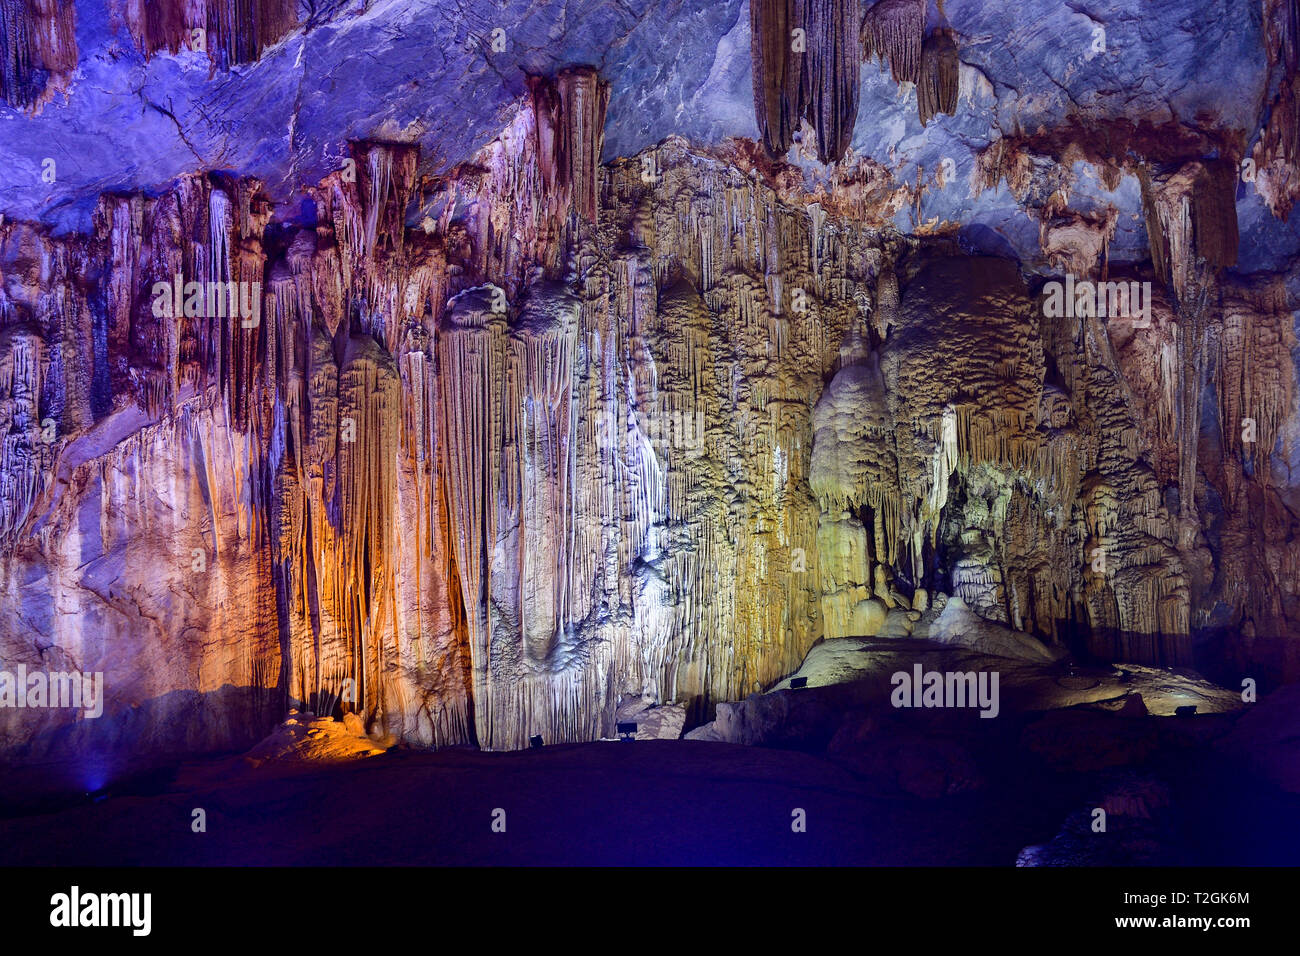 Formes géologiques étonnantes au Paradis près de la grotte de Phong Nha, Vietnam. Grotte calcaire recouverte de stalactites et stalagmites. Banque D'Images